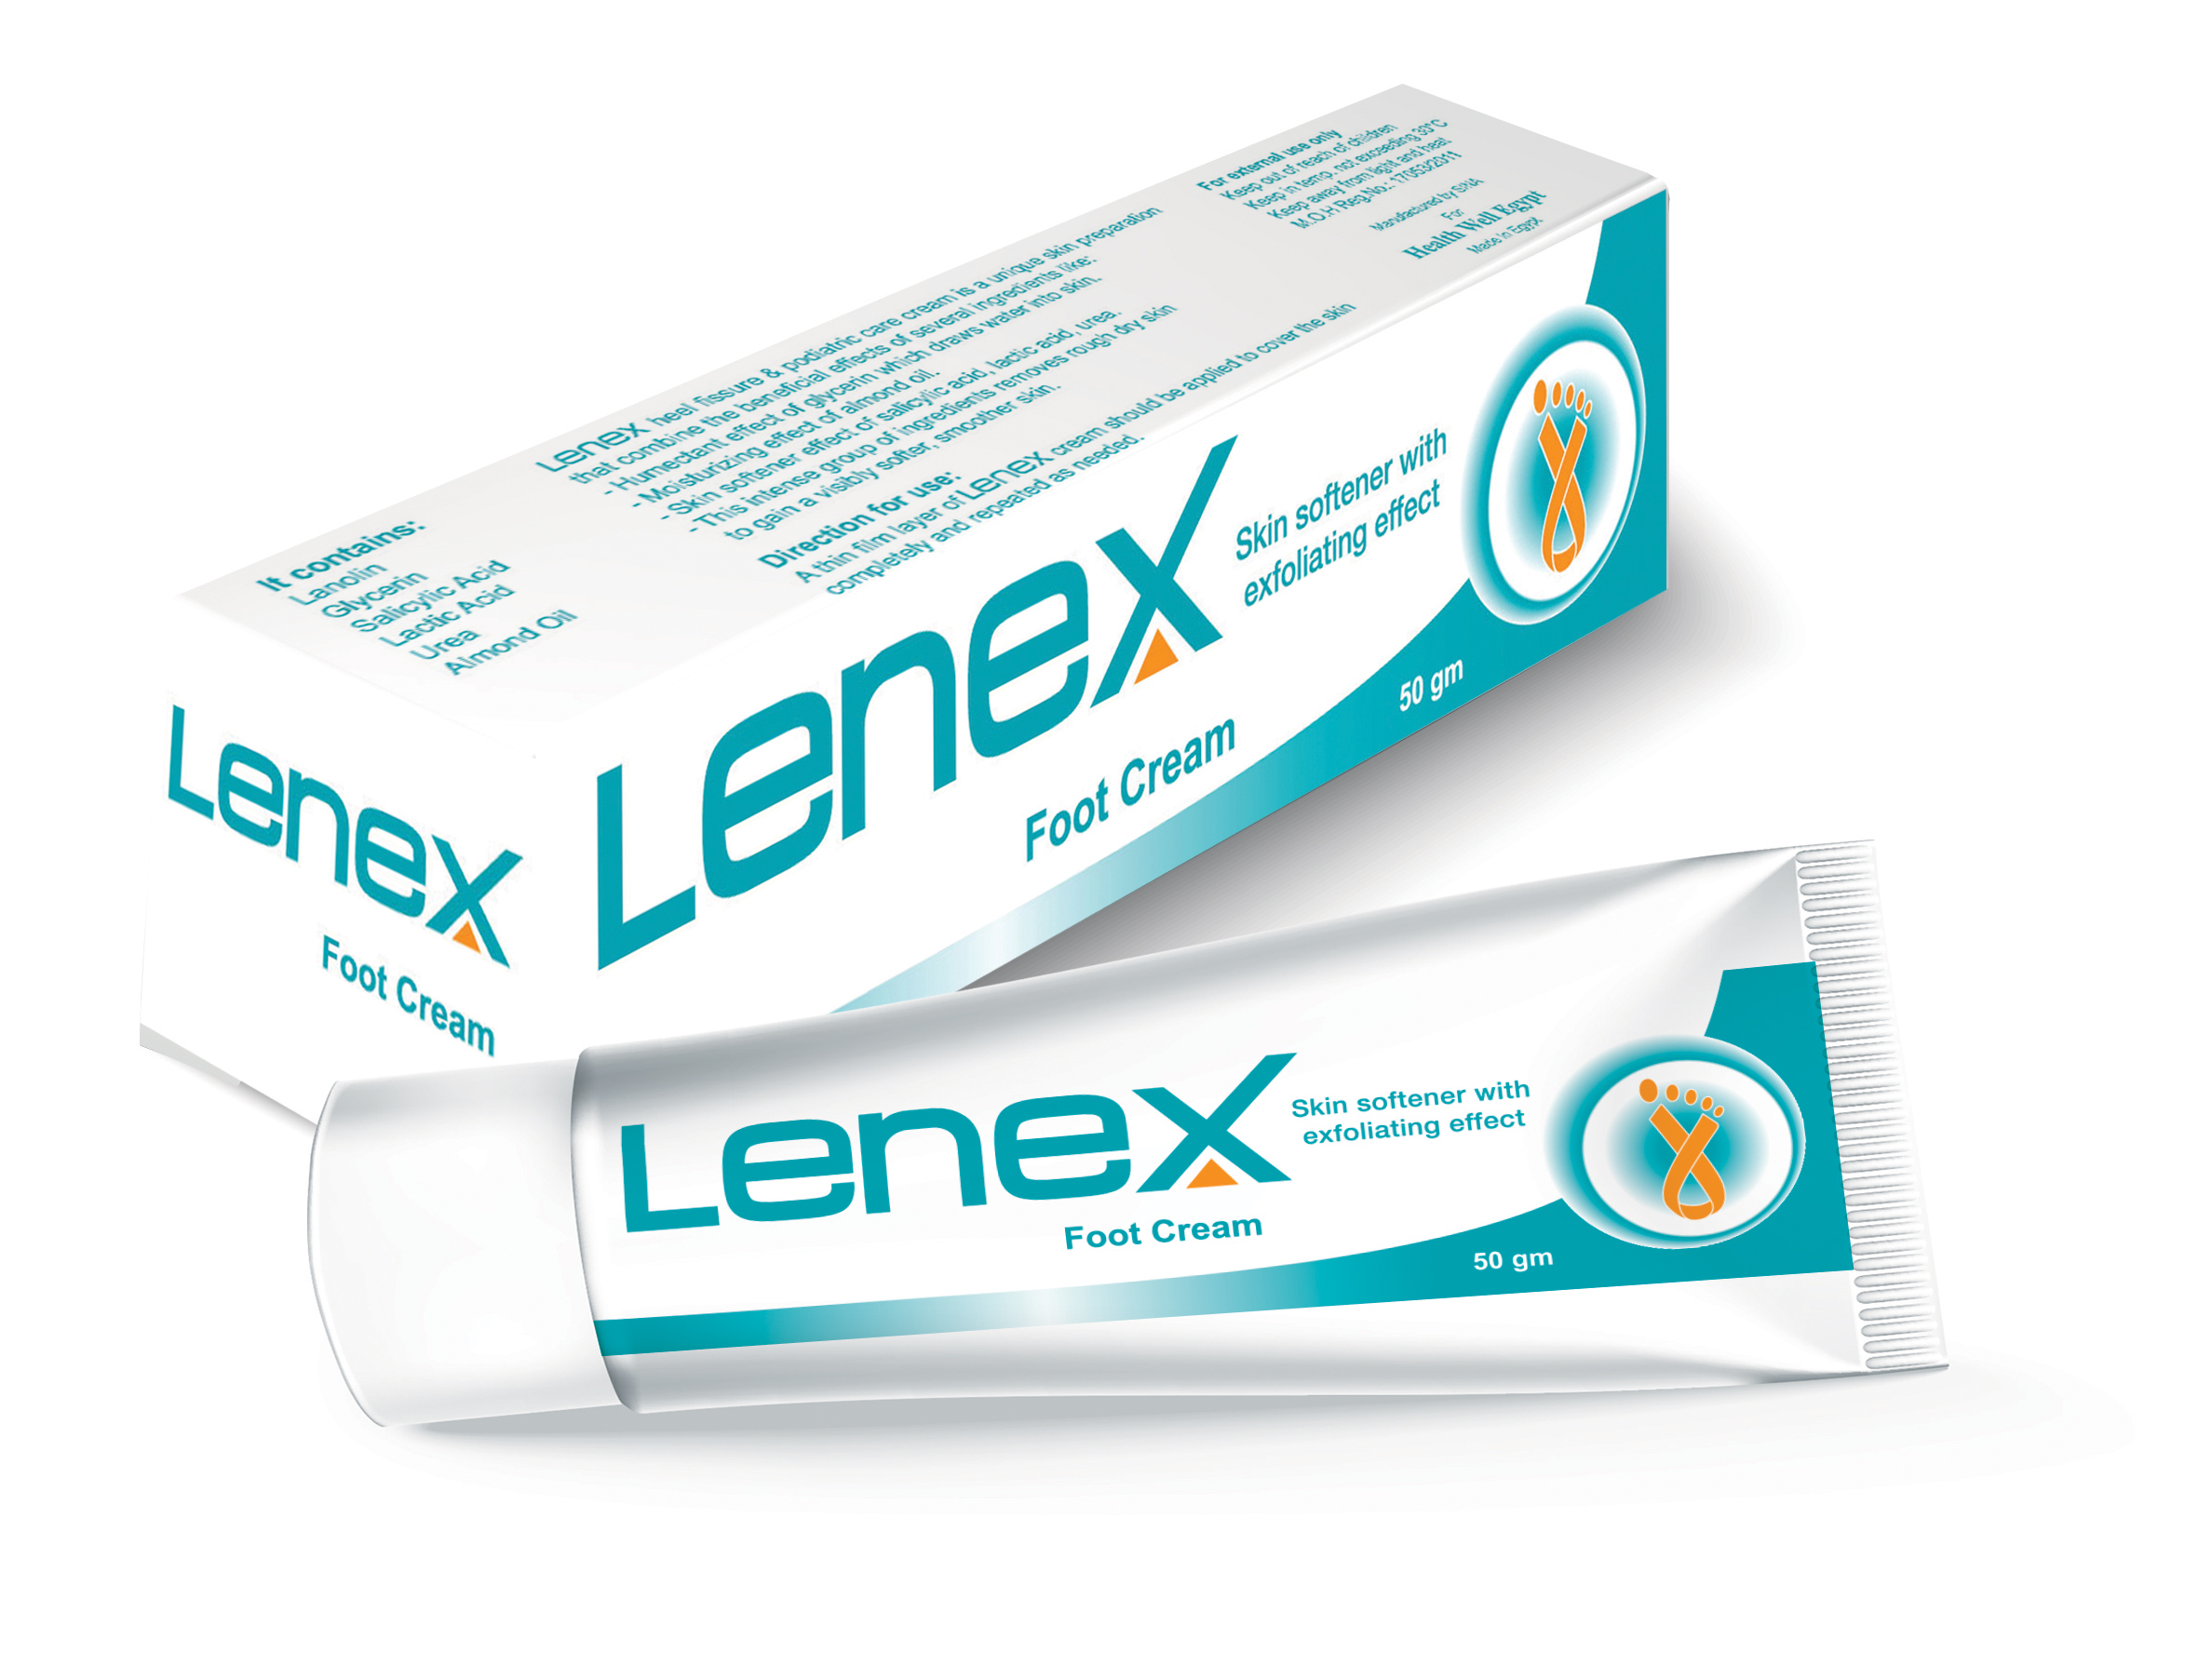 كريم لينيكس Lenex للقدمين للتخلص من تشققات الكعبين وترطيب الجلد